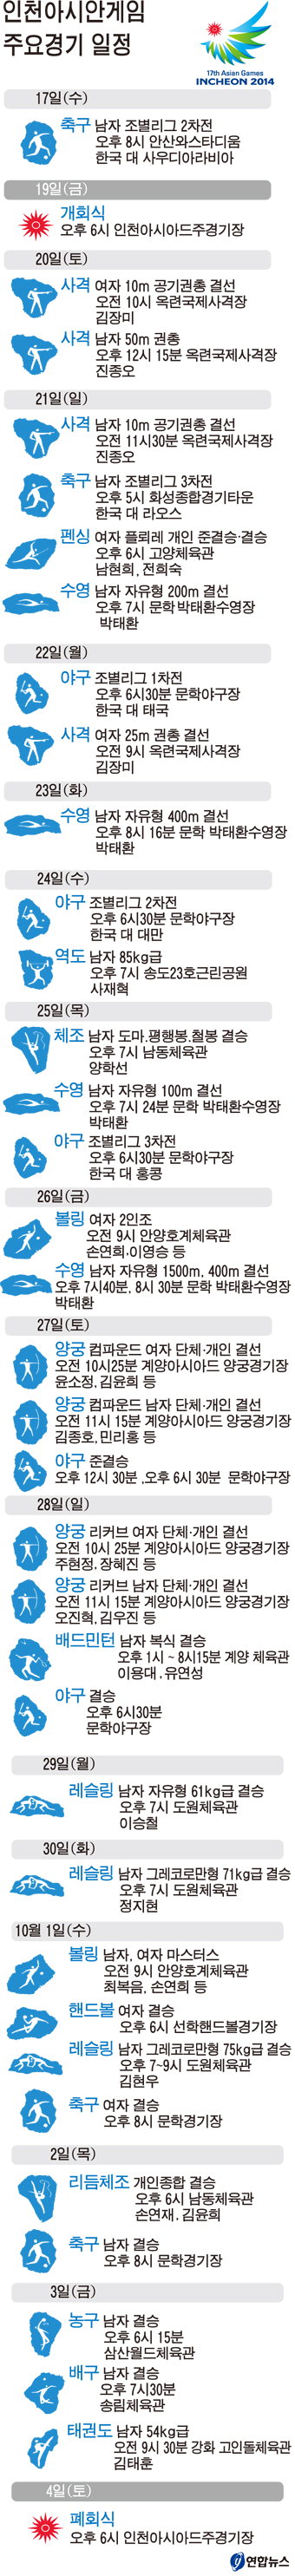 인천아시안게임 주요경기 일정